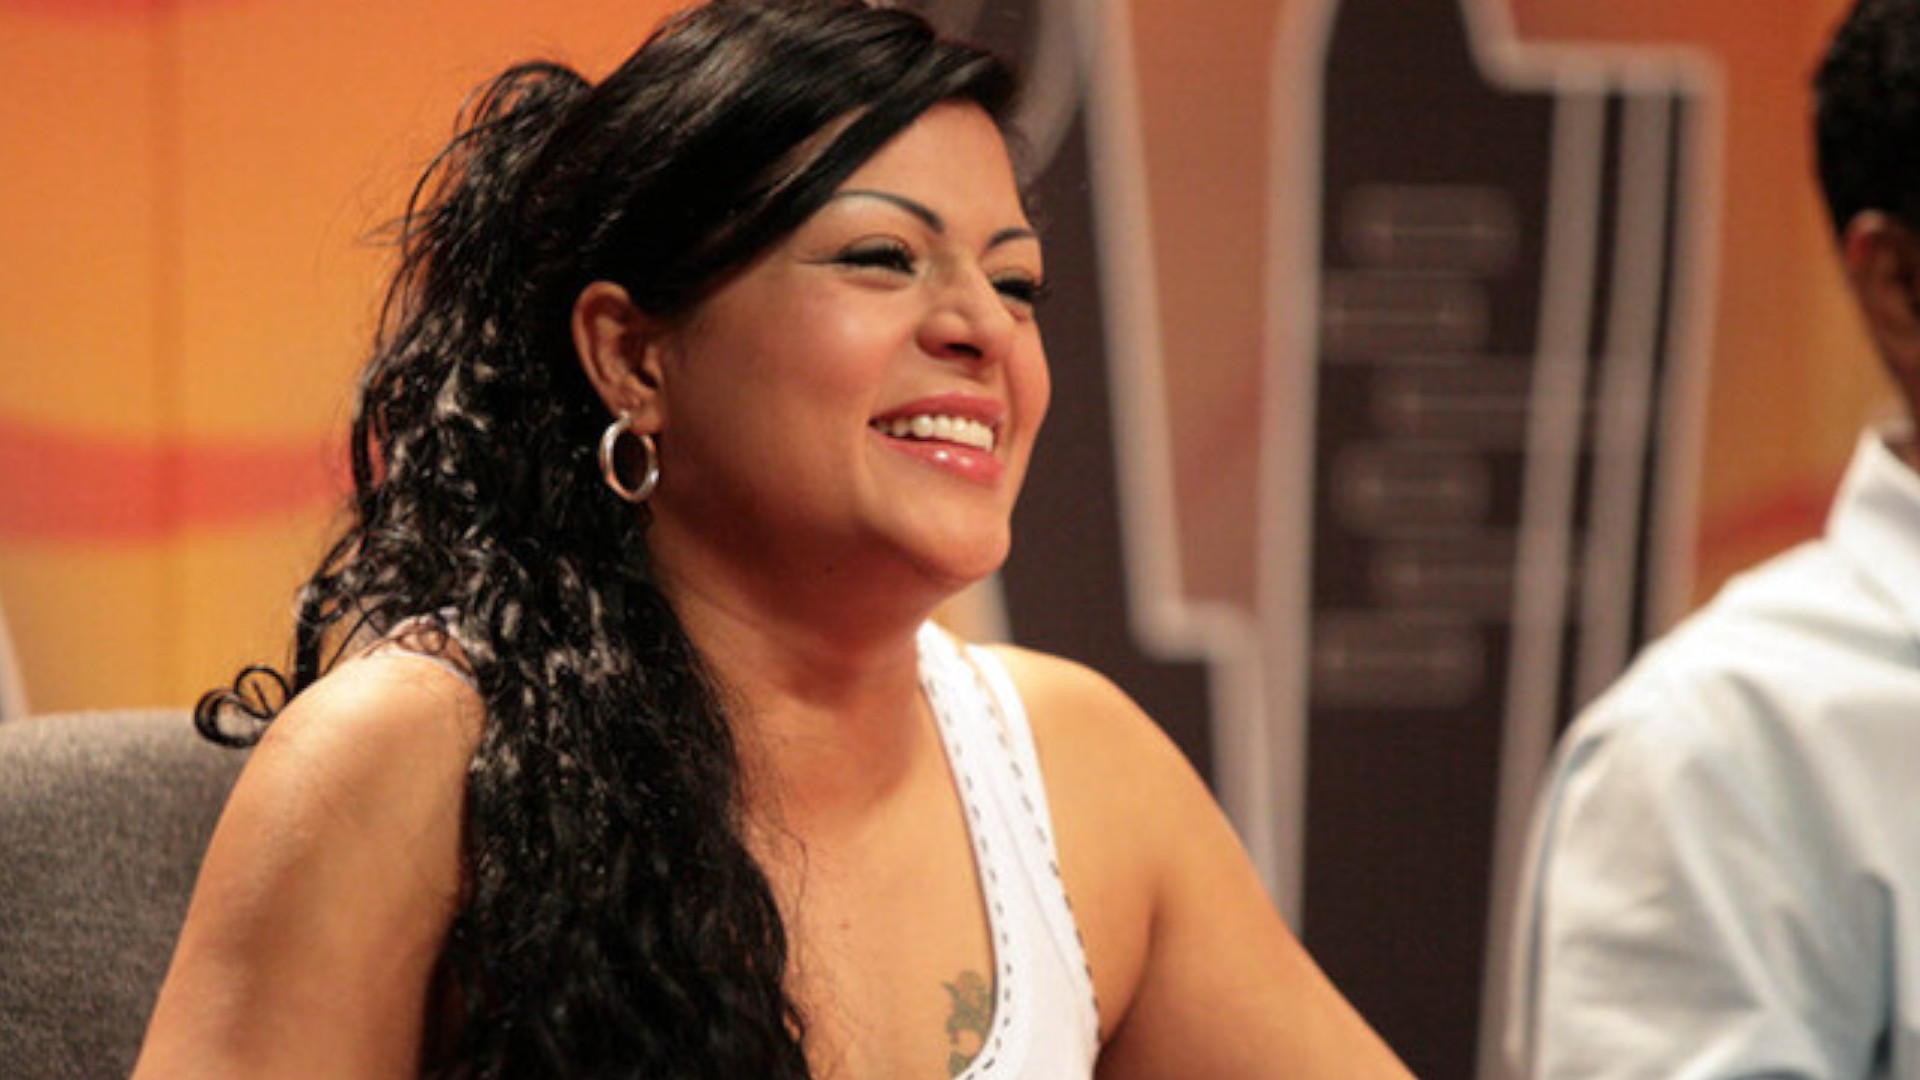 La cantante colombiana es conocida, en los últimos meses, más por sus polémicas en Twitter que por su música. Foto: Colprensa